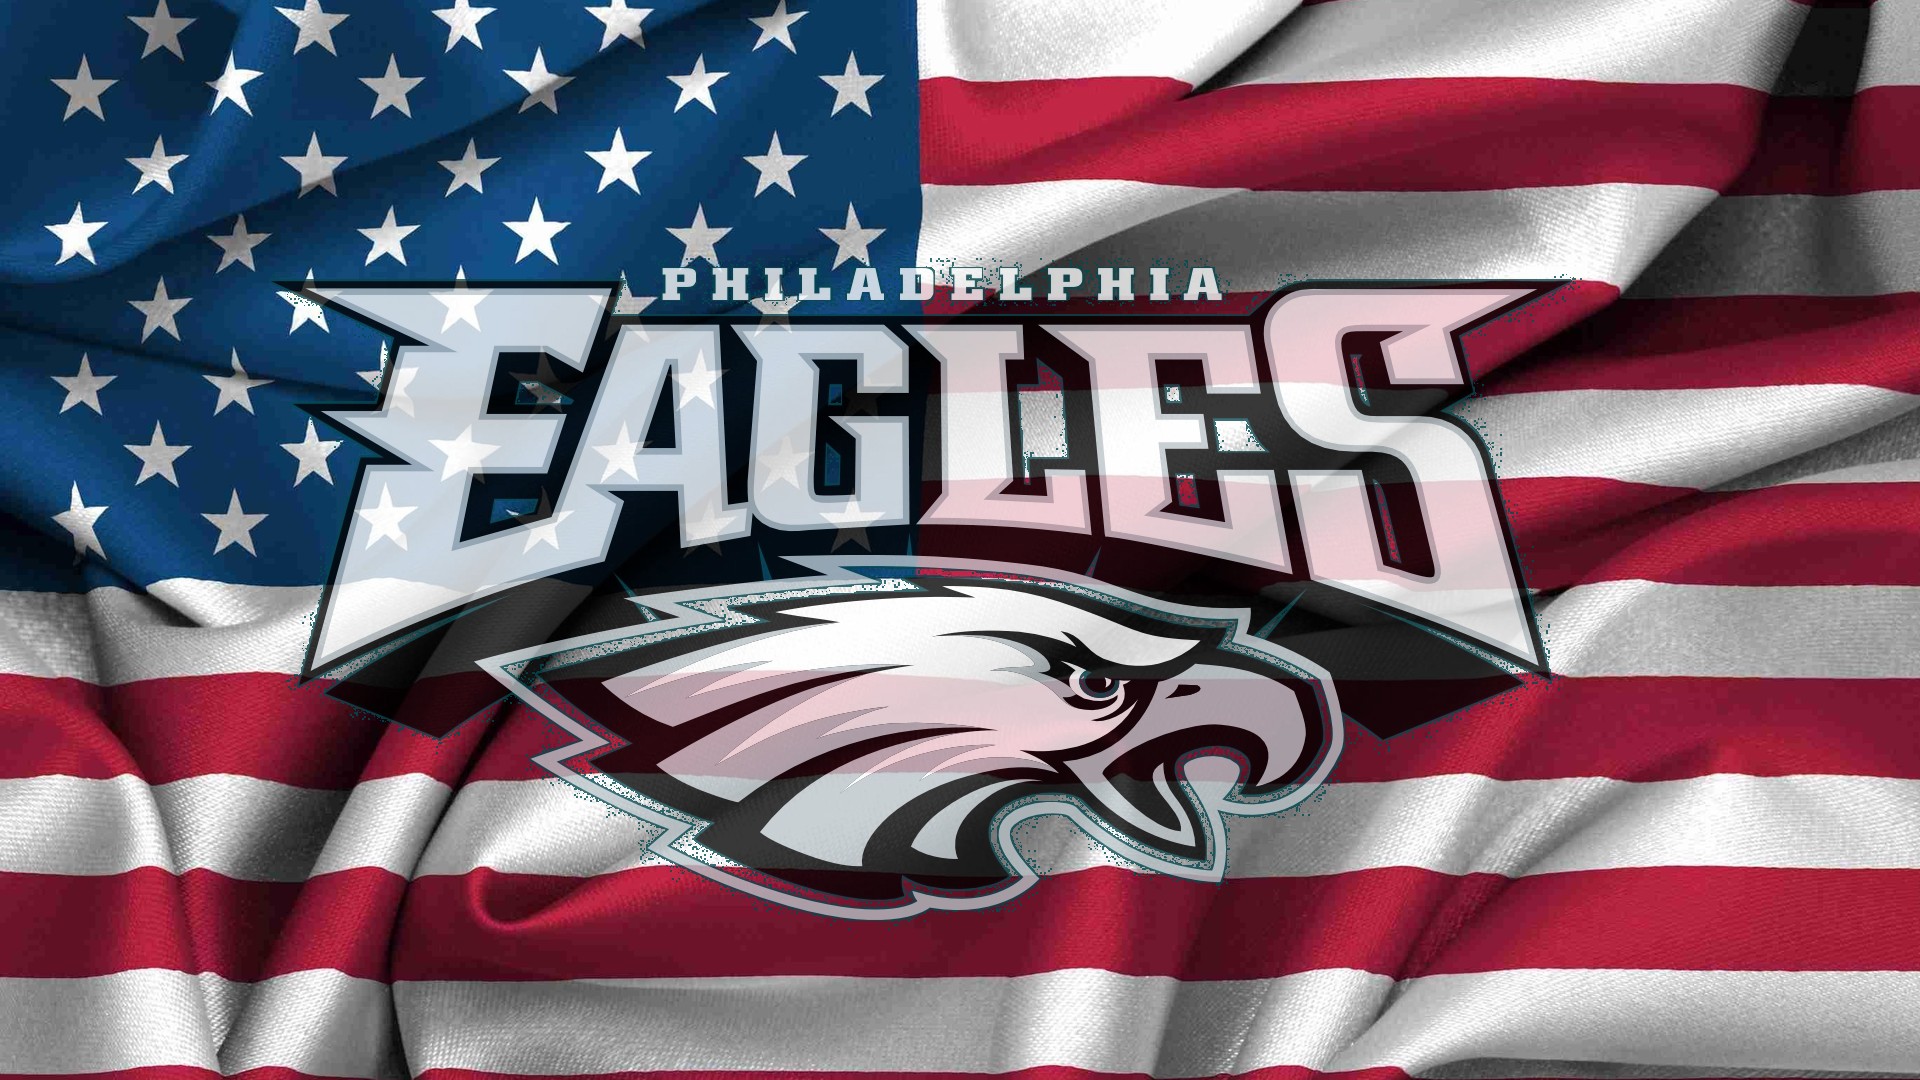 Nfl Eagles Logo Wallpaper Philadelphia